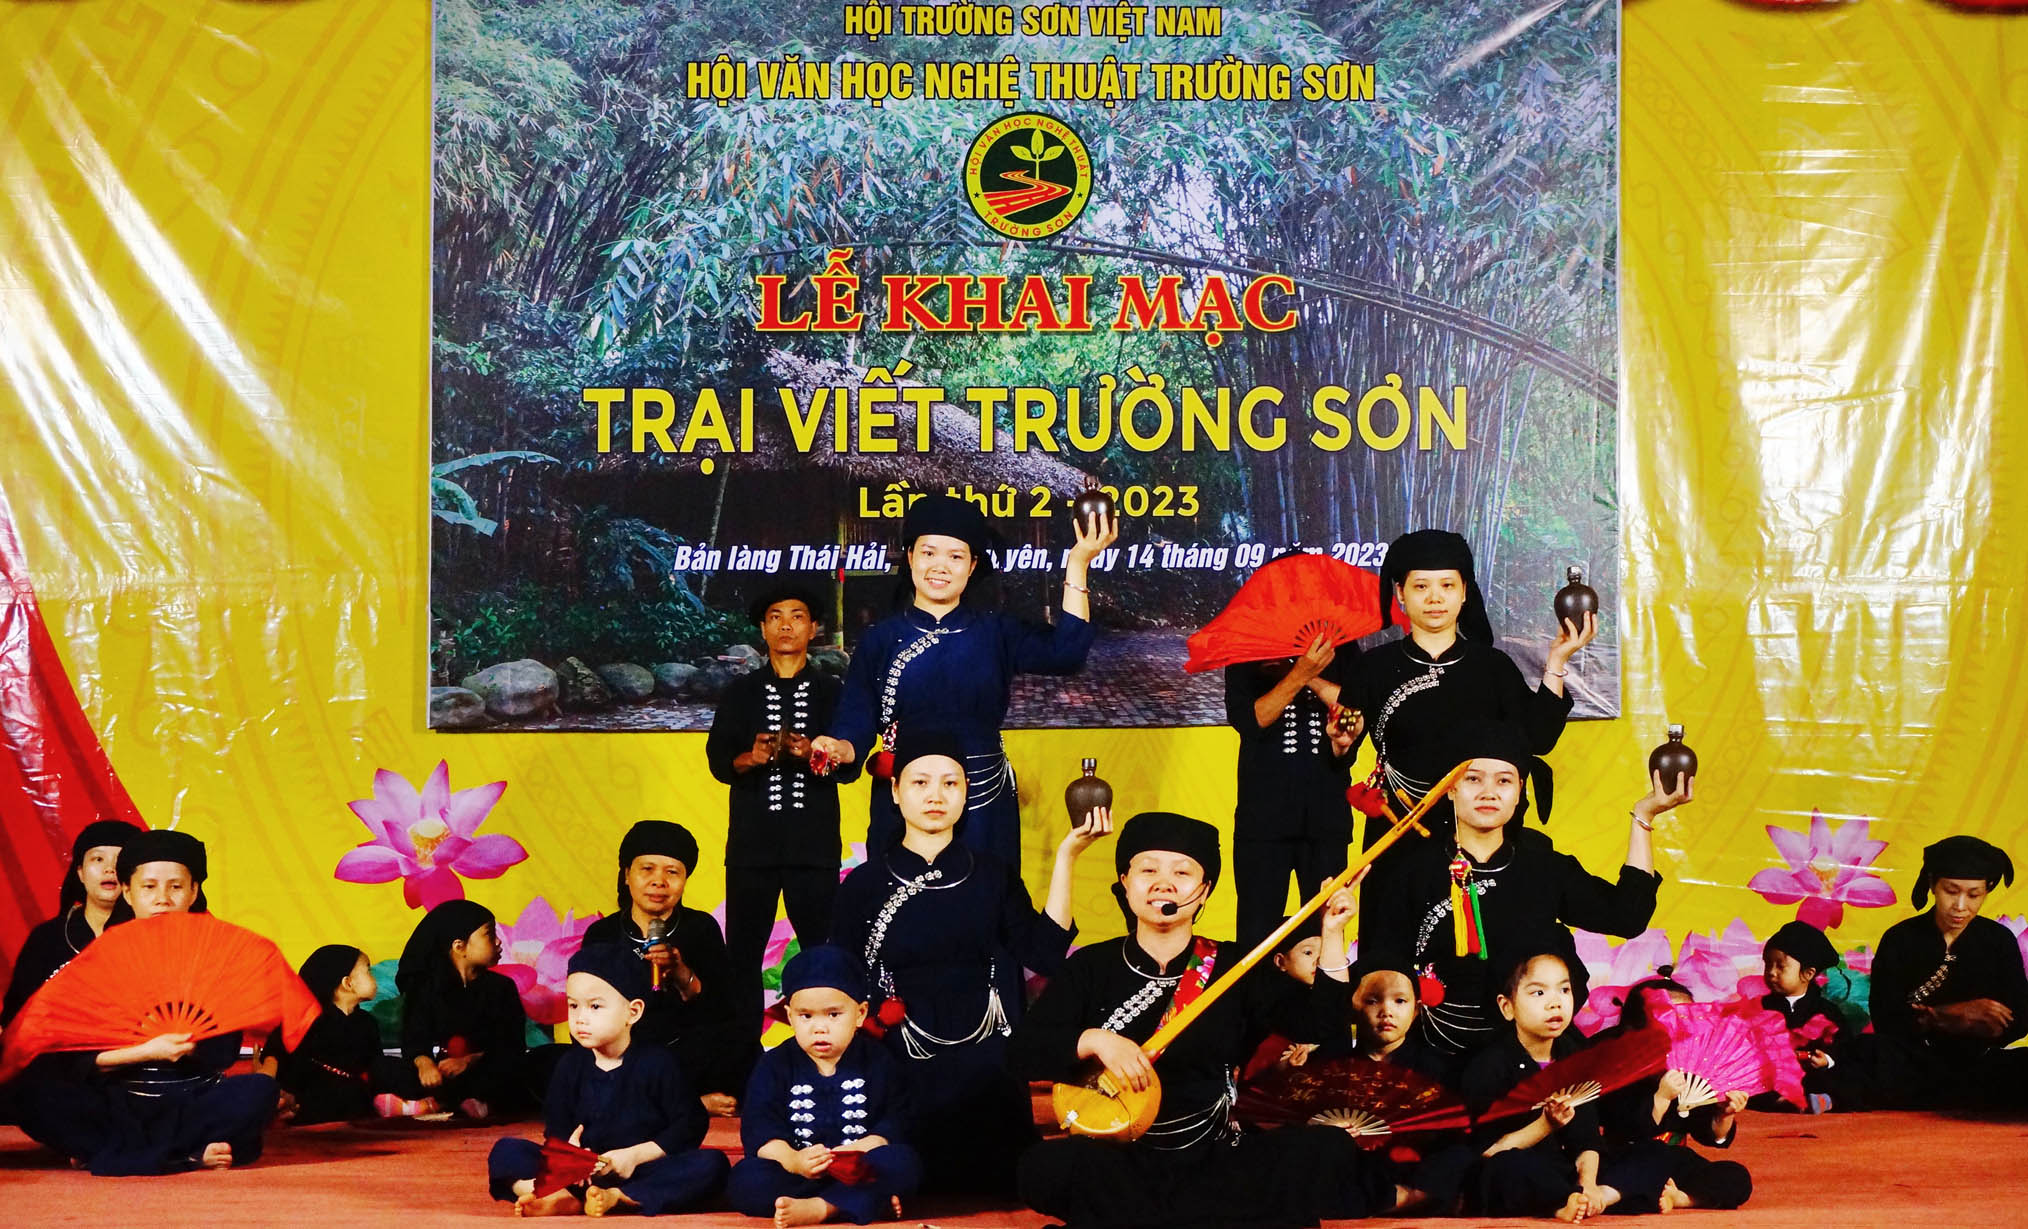 Làn điệu then cổ “Đón khách” với sự tham gia của 3 thế hệ Làng nhà sàn dân tộc sinh thái Thái Hải biểu diễn chào mừng